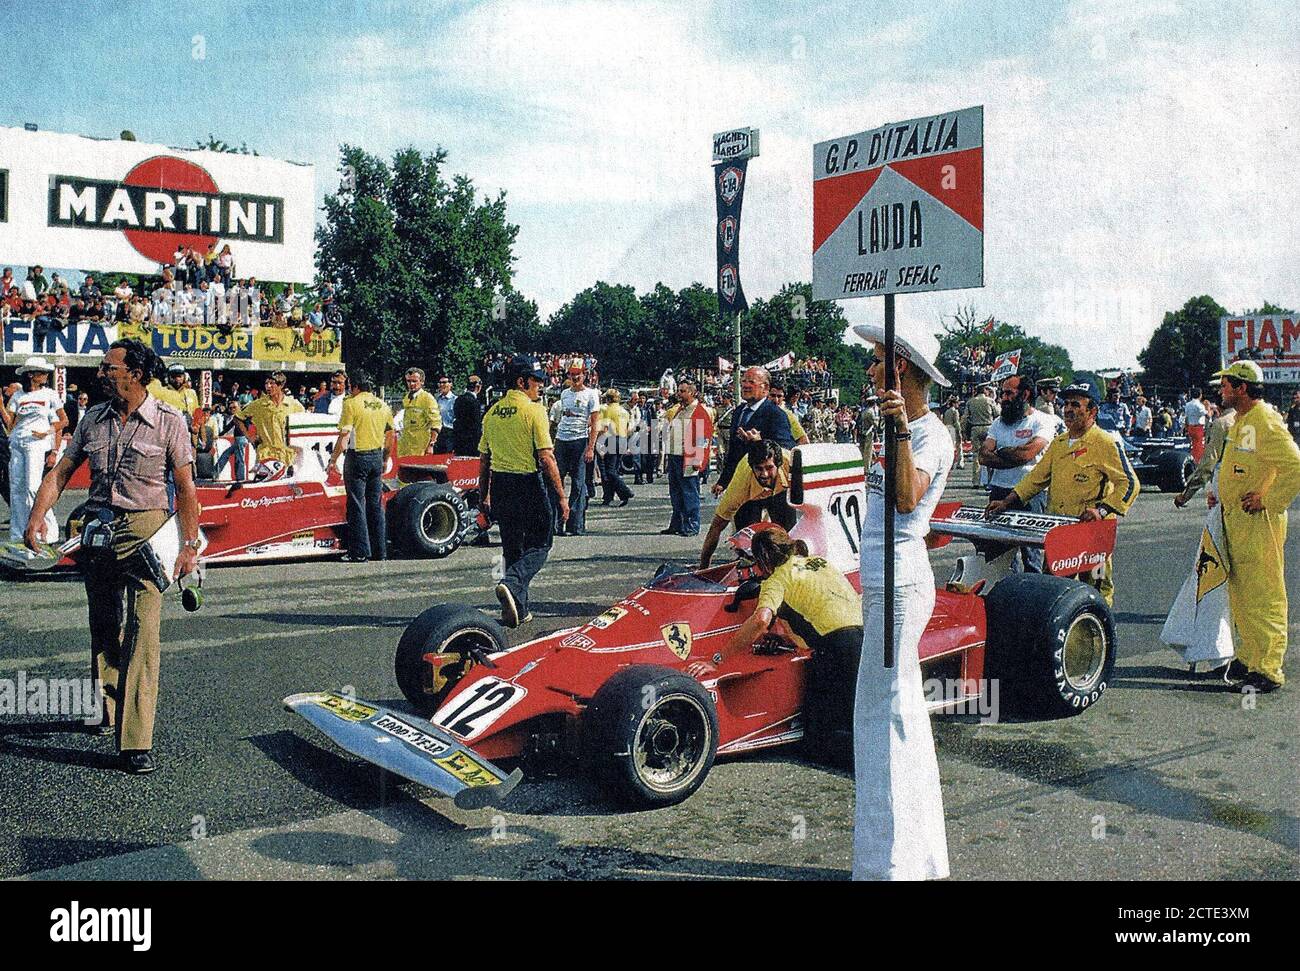 Monza, Autodromo Nazionale, 7. September 1975. Der Österreicher Niki Lauda, ​​Author von der Pole Position, im Cockpit seines Ferrari 312 T Warten auf der Route der XLVI italienischen Grand Prix, zu seiner Rechten, auf dem zweiten Feld der Grid, sein Teamkollege, der Schweizer Clay Regazzoni. Stockfoto